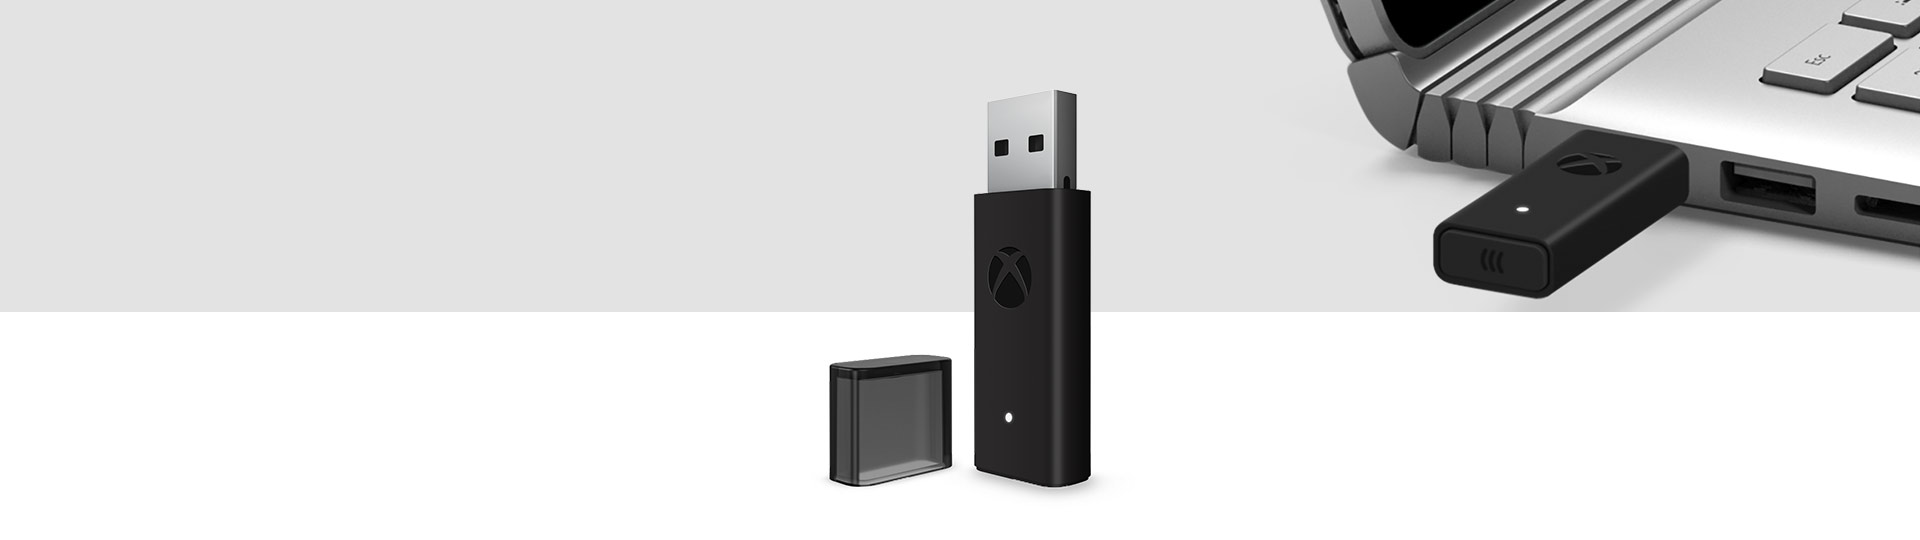 Xbox draadloze controller + adapter voor Windows 10 met de Xbox draadloze adapter aangesloten op een USB-poort op een laptop op de achtergrond